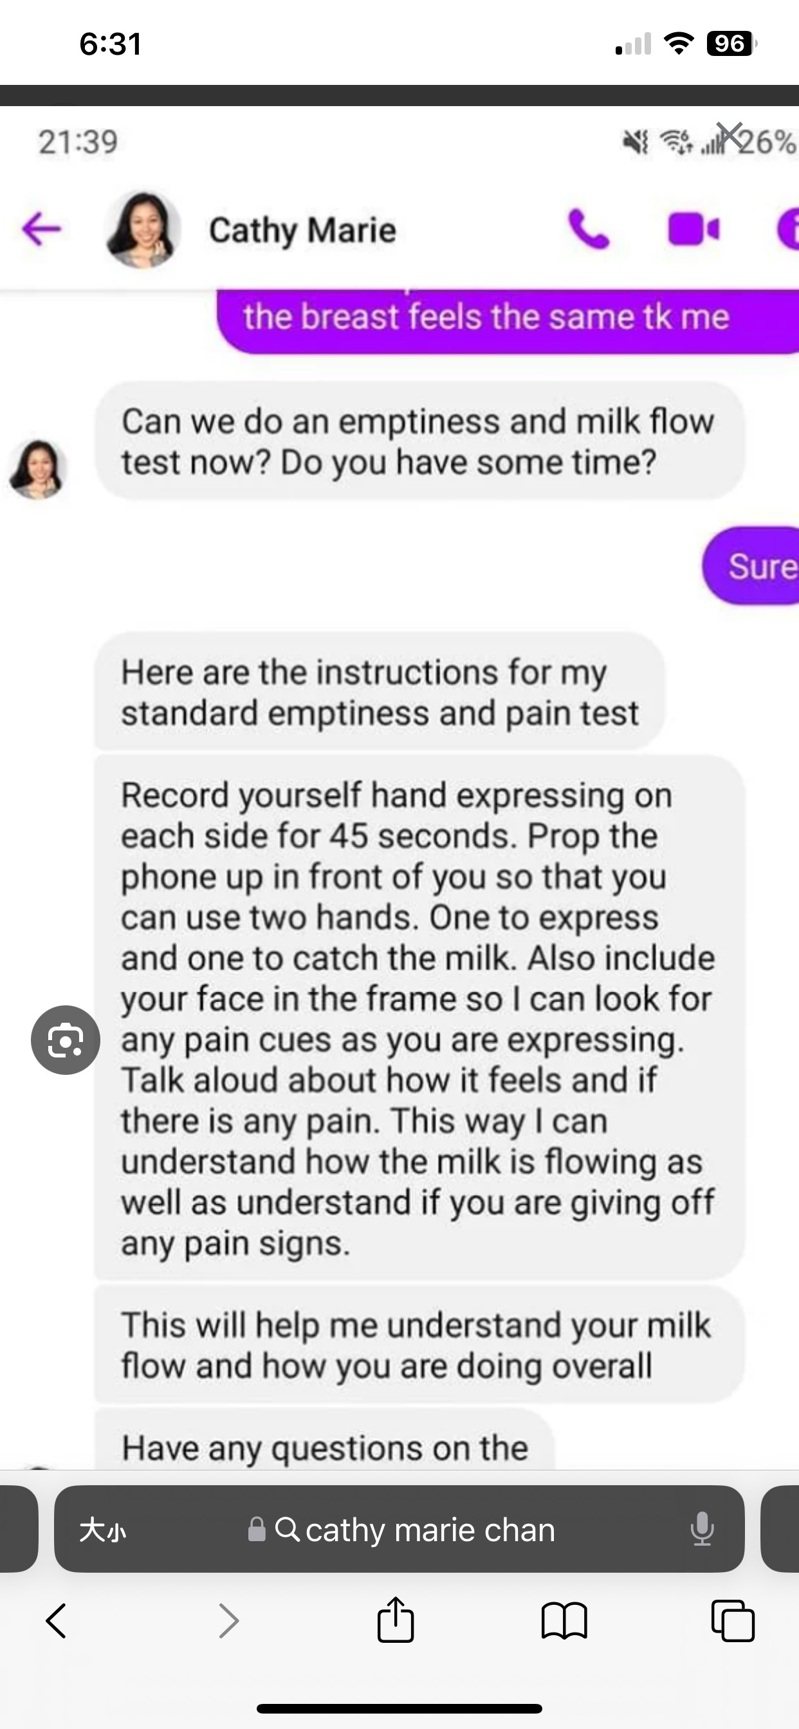 假冒陳姓哺乳顧問的婦女，透過臉書Messenger向新手媽媽索要私密影片、照片。(受害者提供)